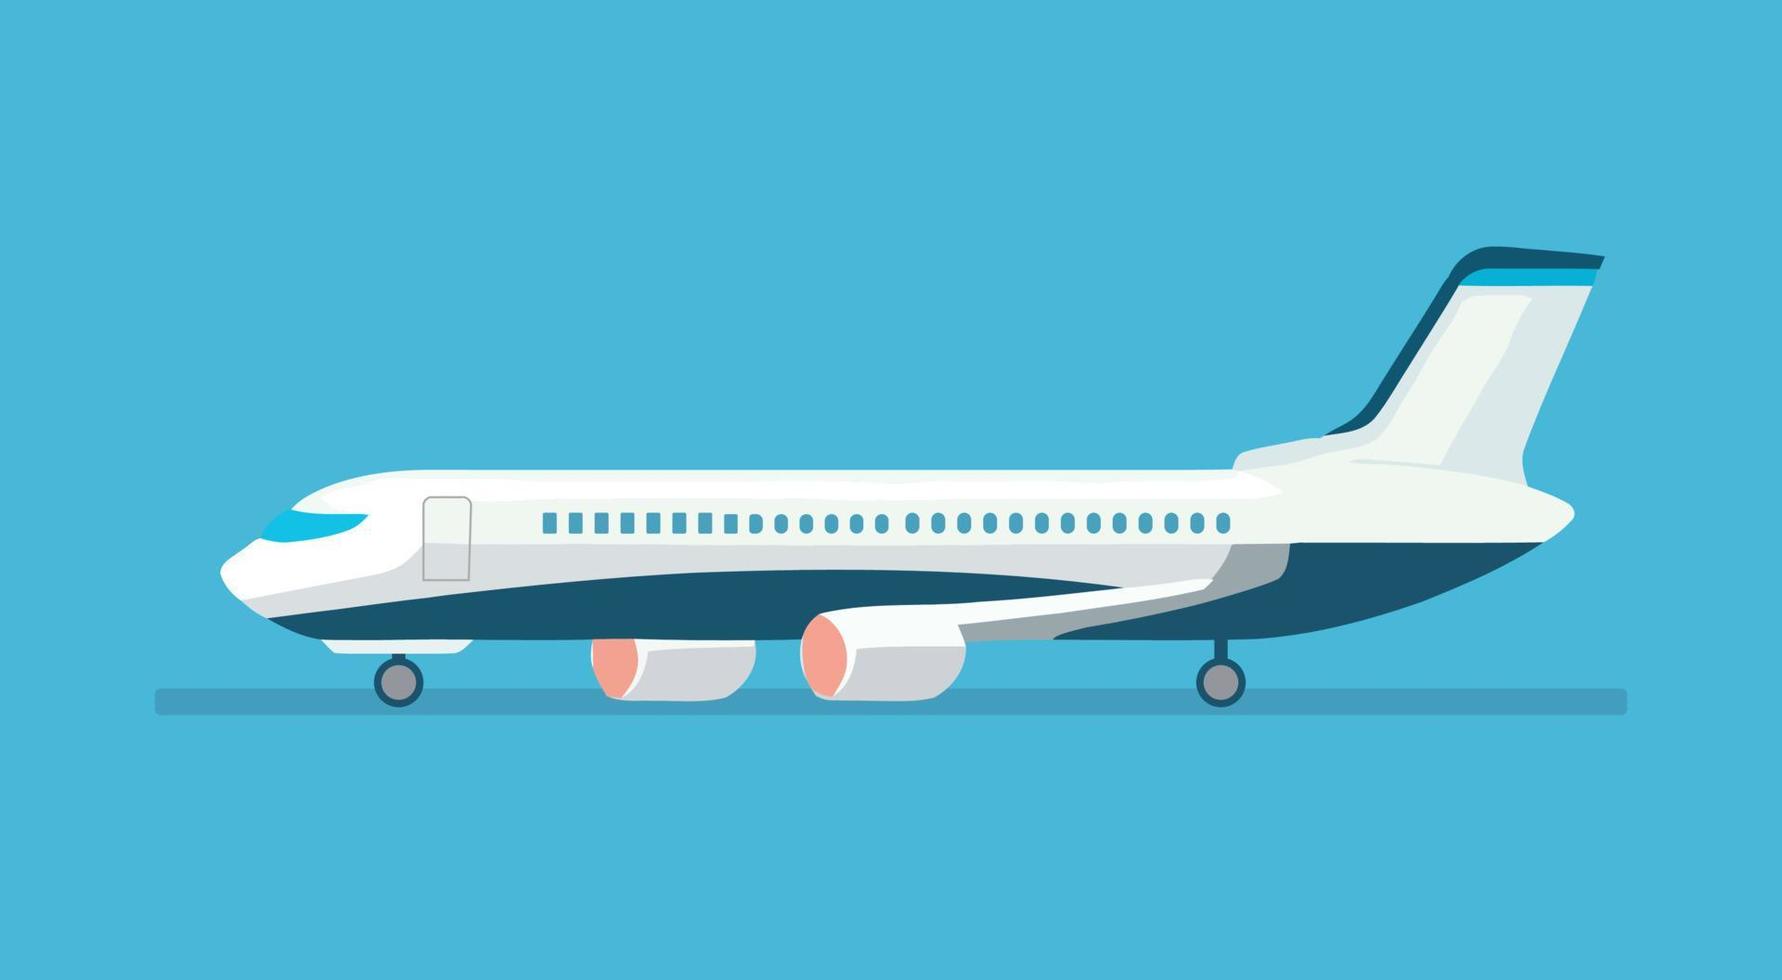 passagerare plan på en blå bakgrund. vektor illustration av ett flygplan.